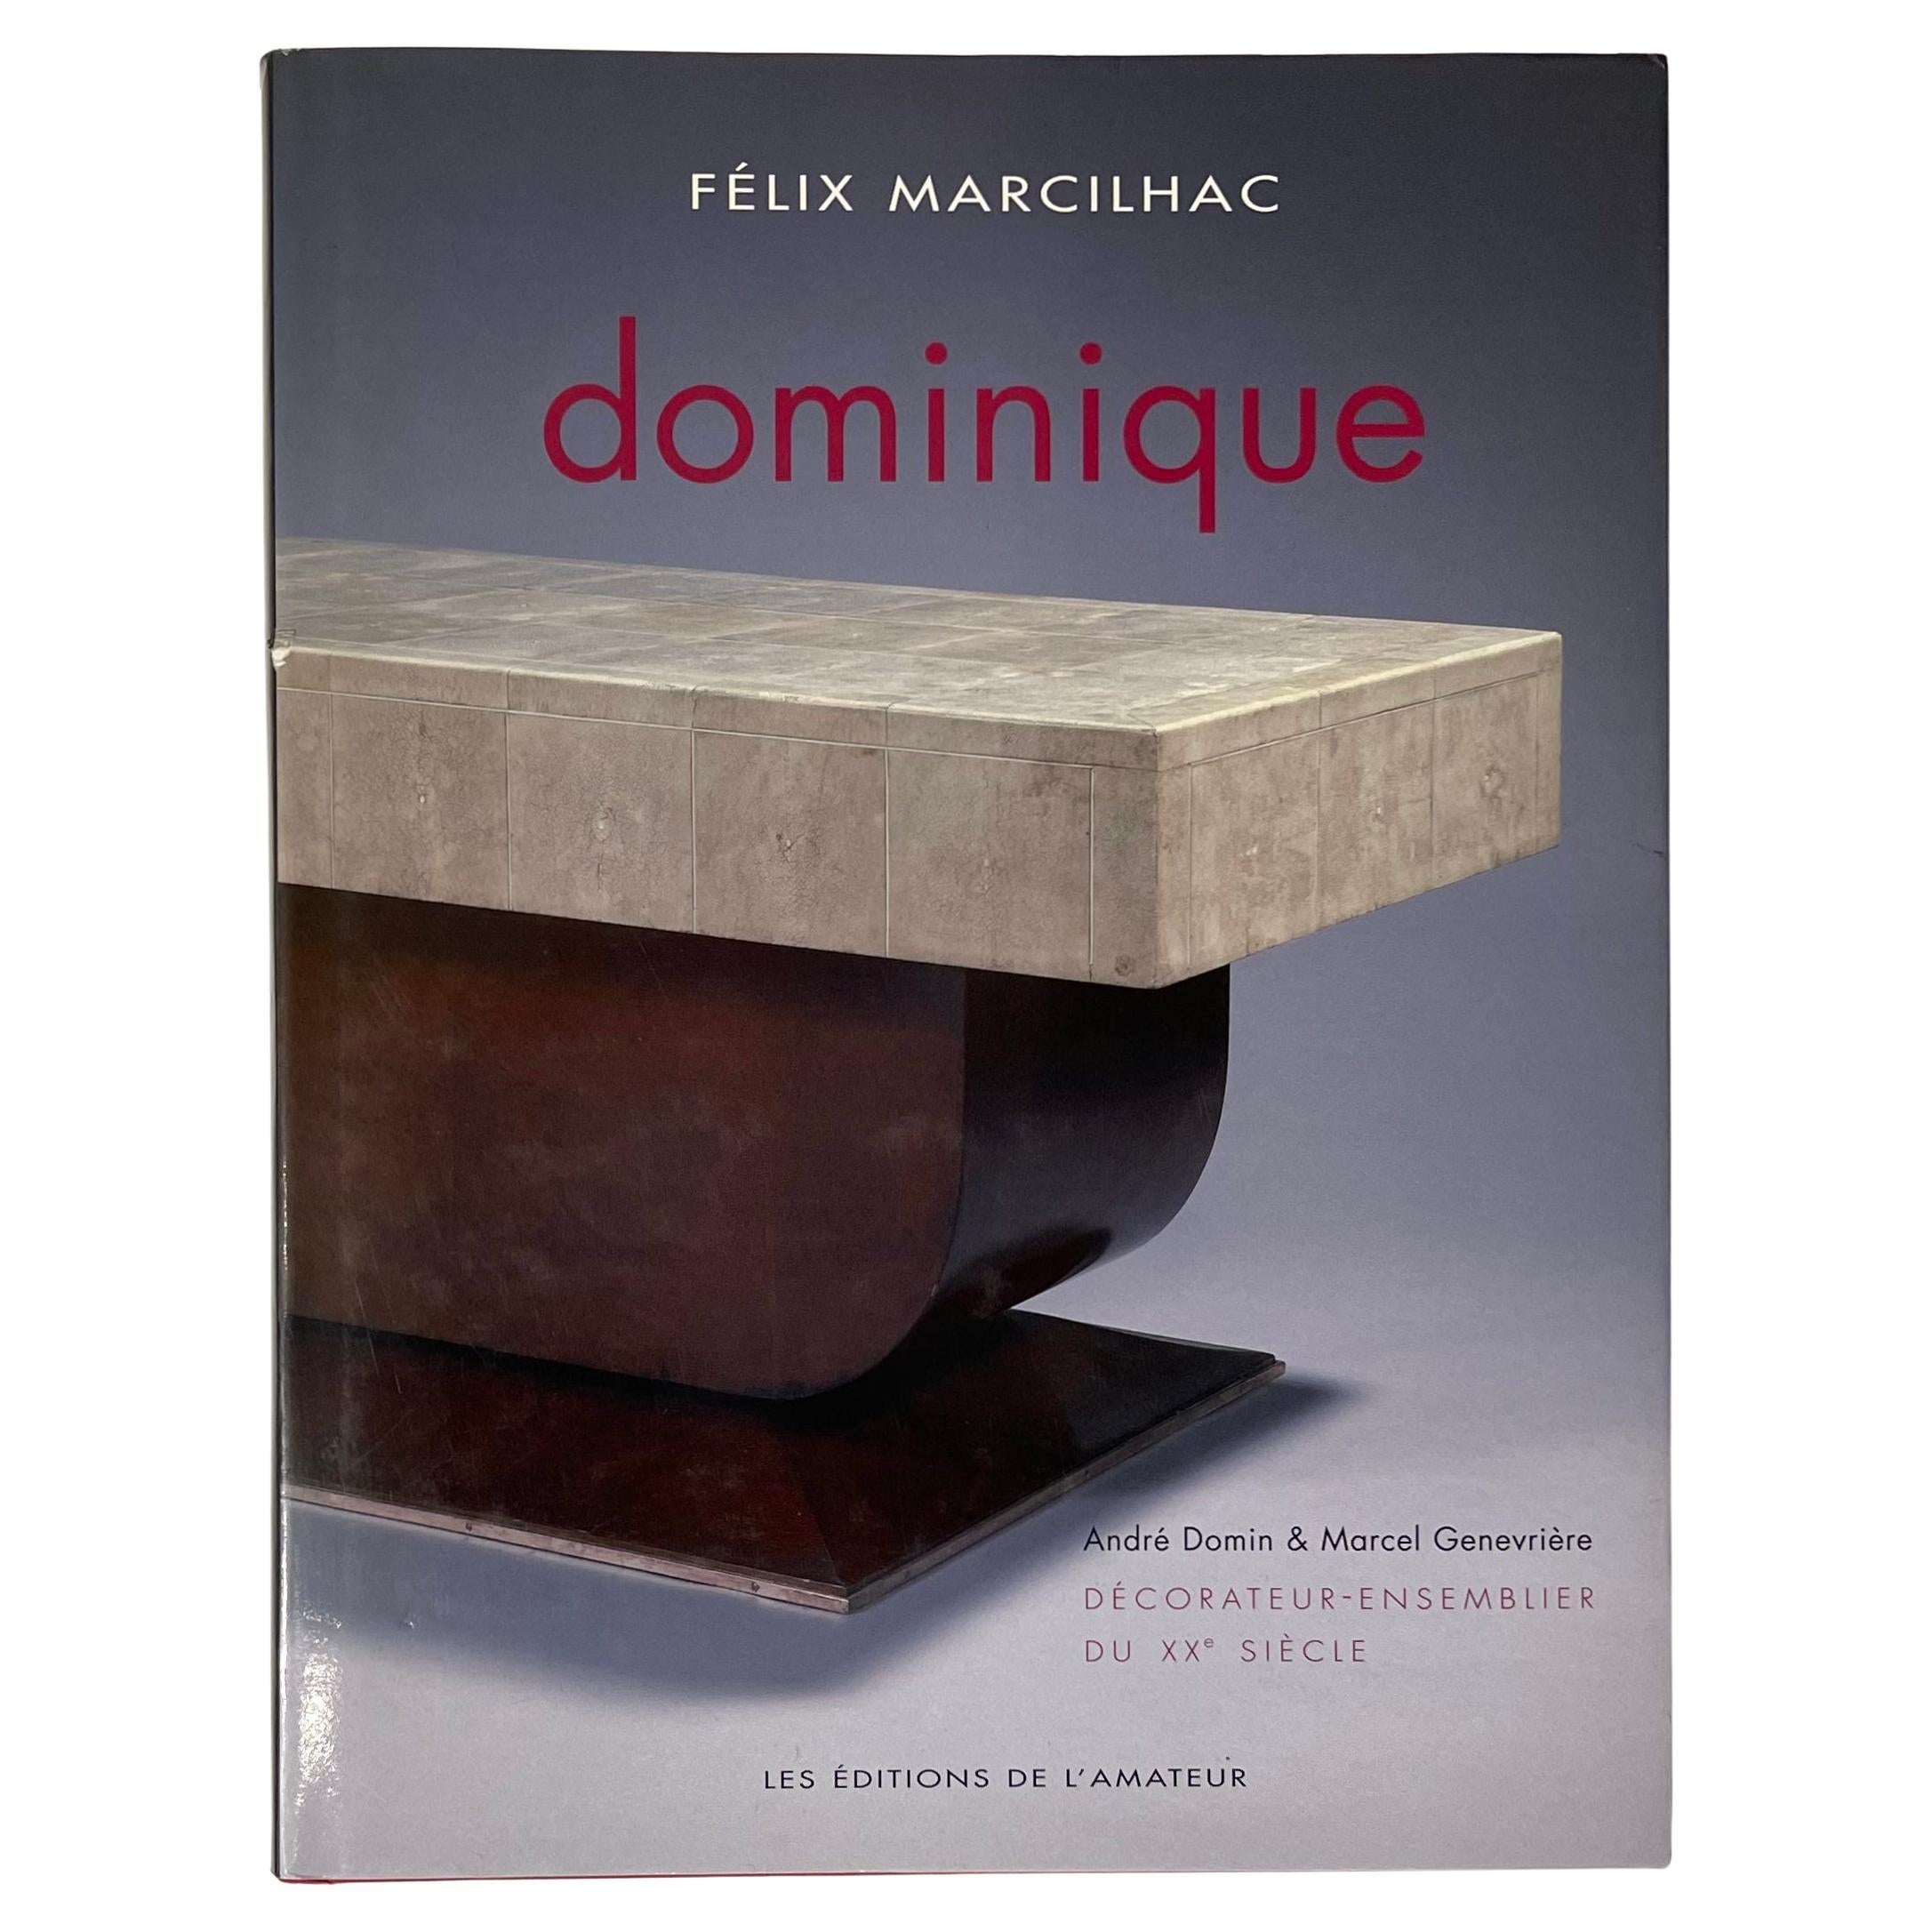 Dominique by Felix Marcilhac 1st Edition, 2008